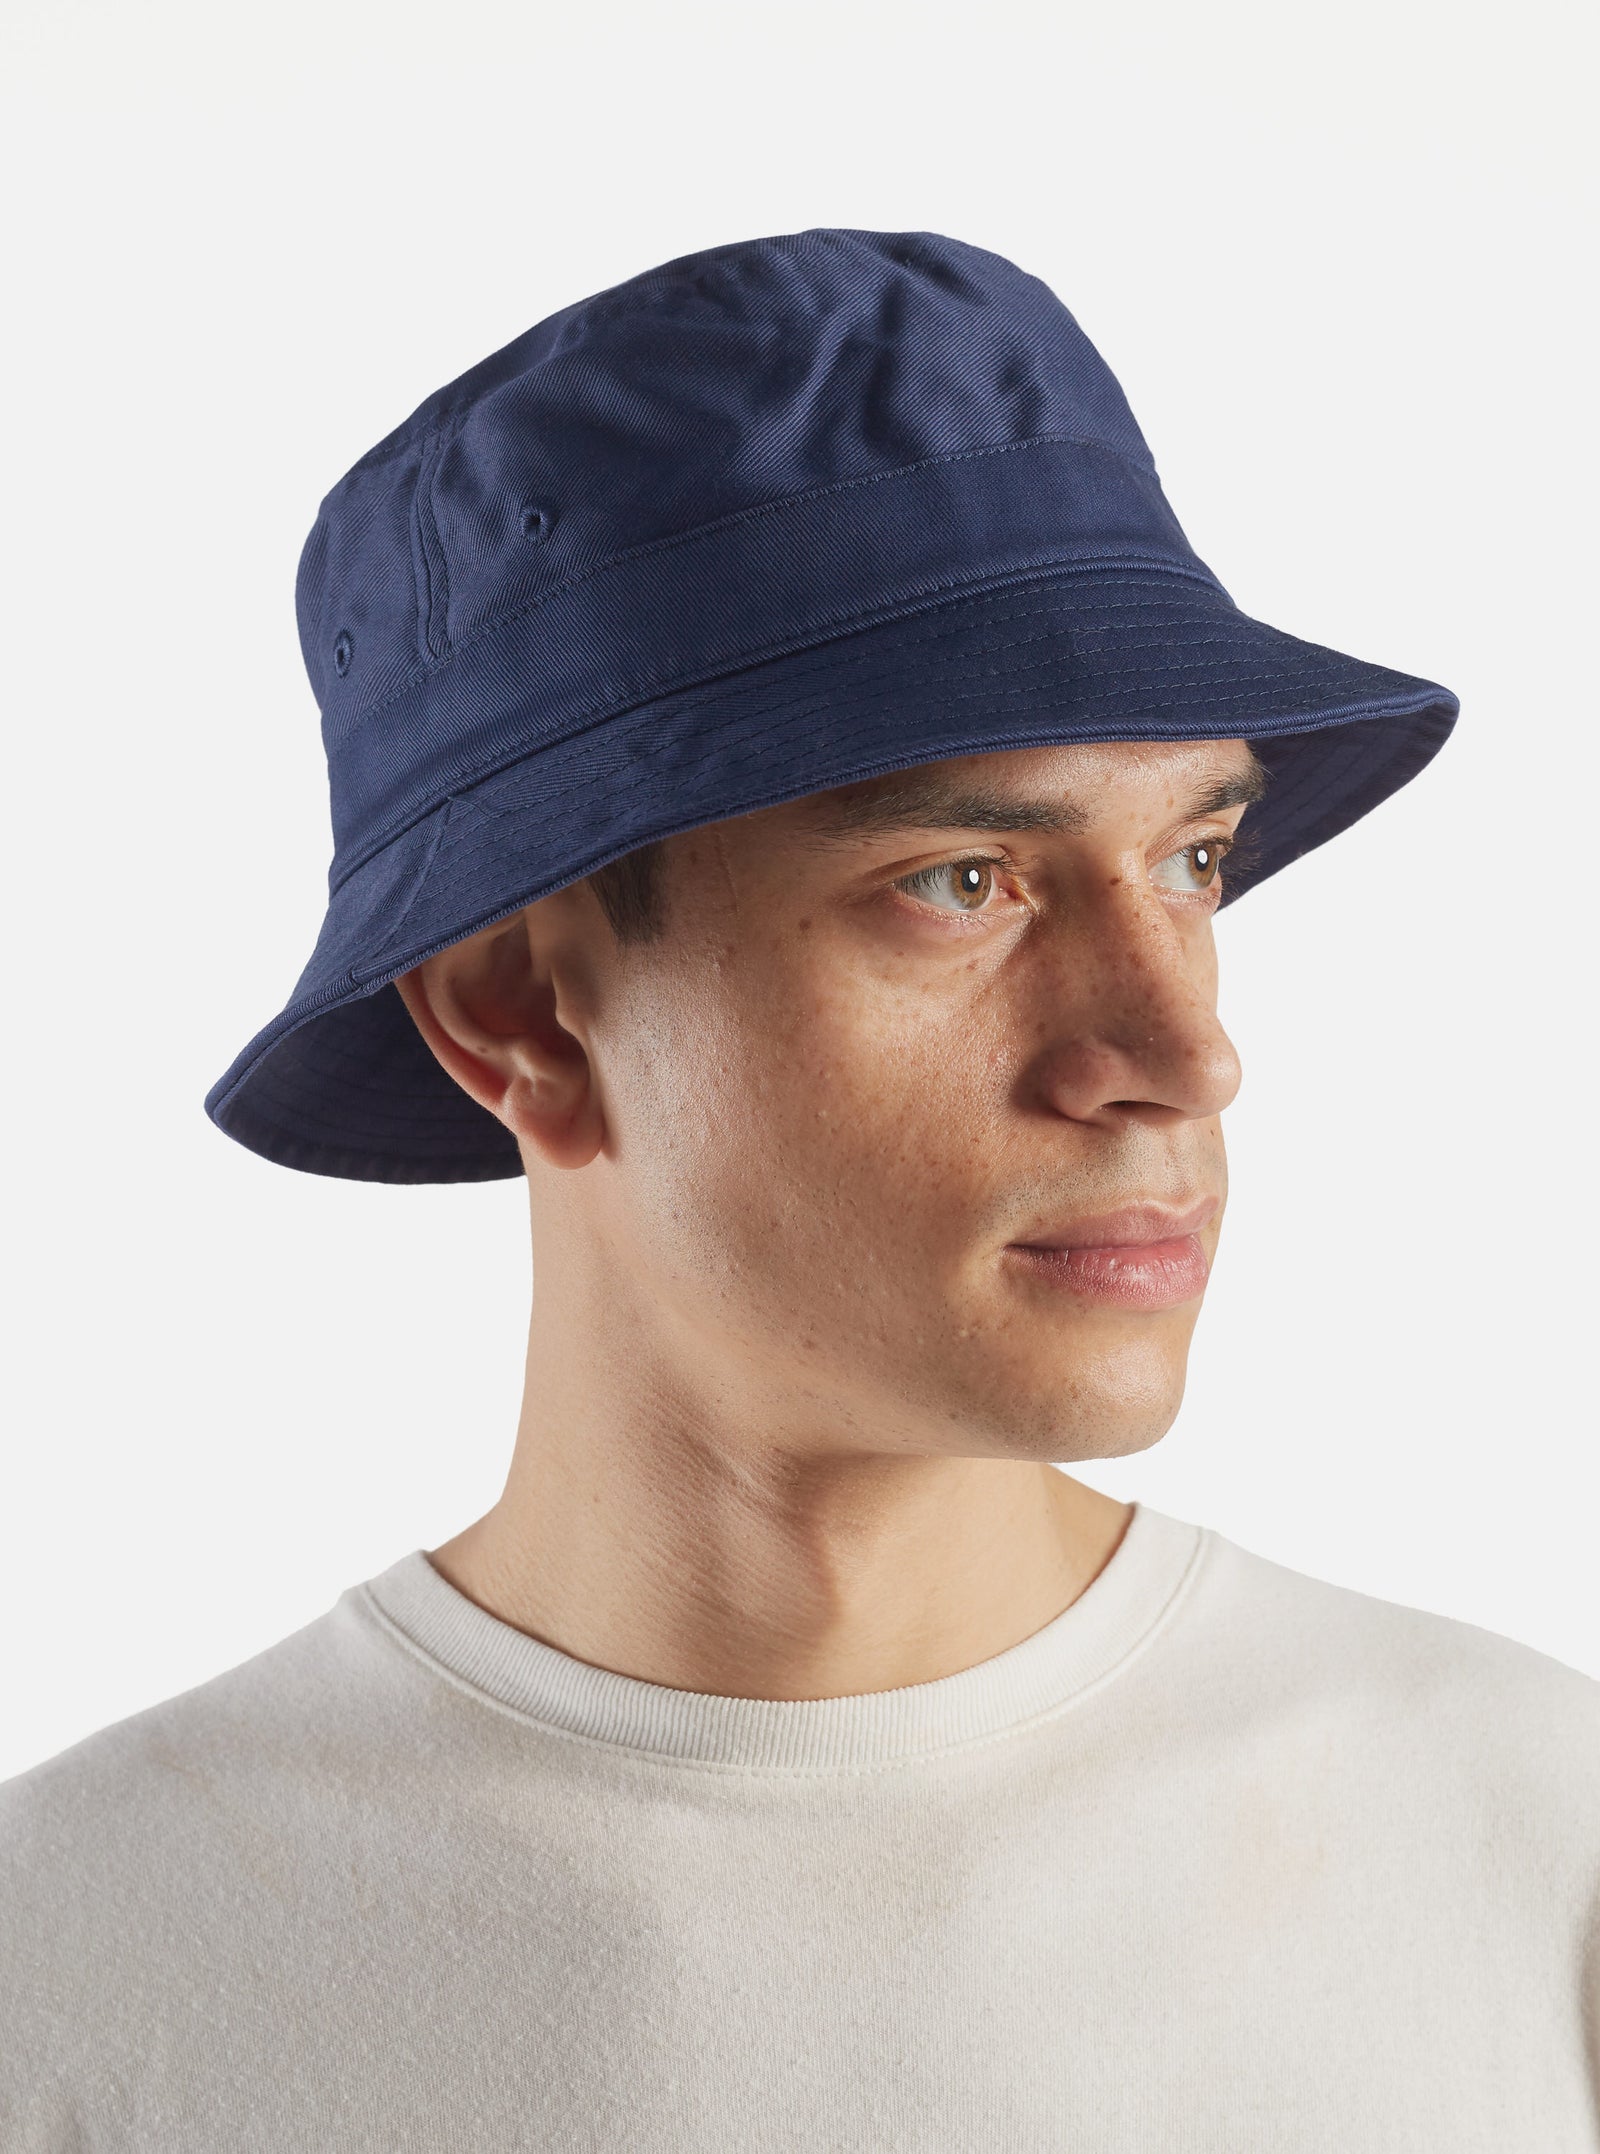 Universal Works Bucket Hat in Navy Twill Cotton